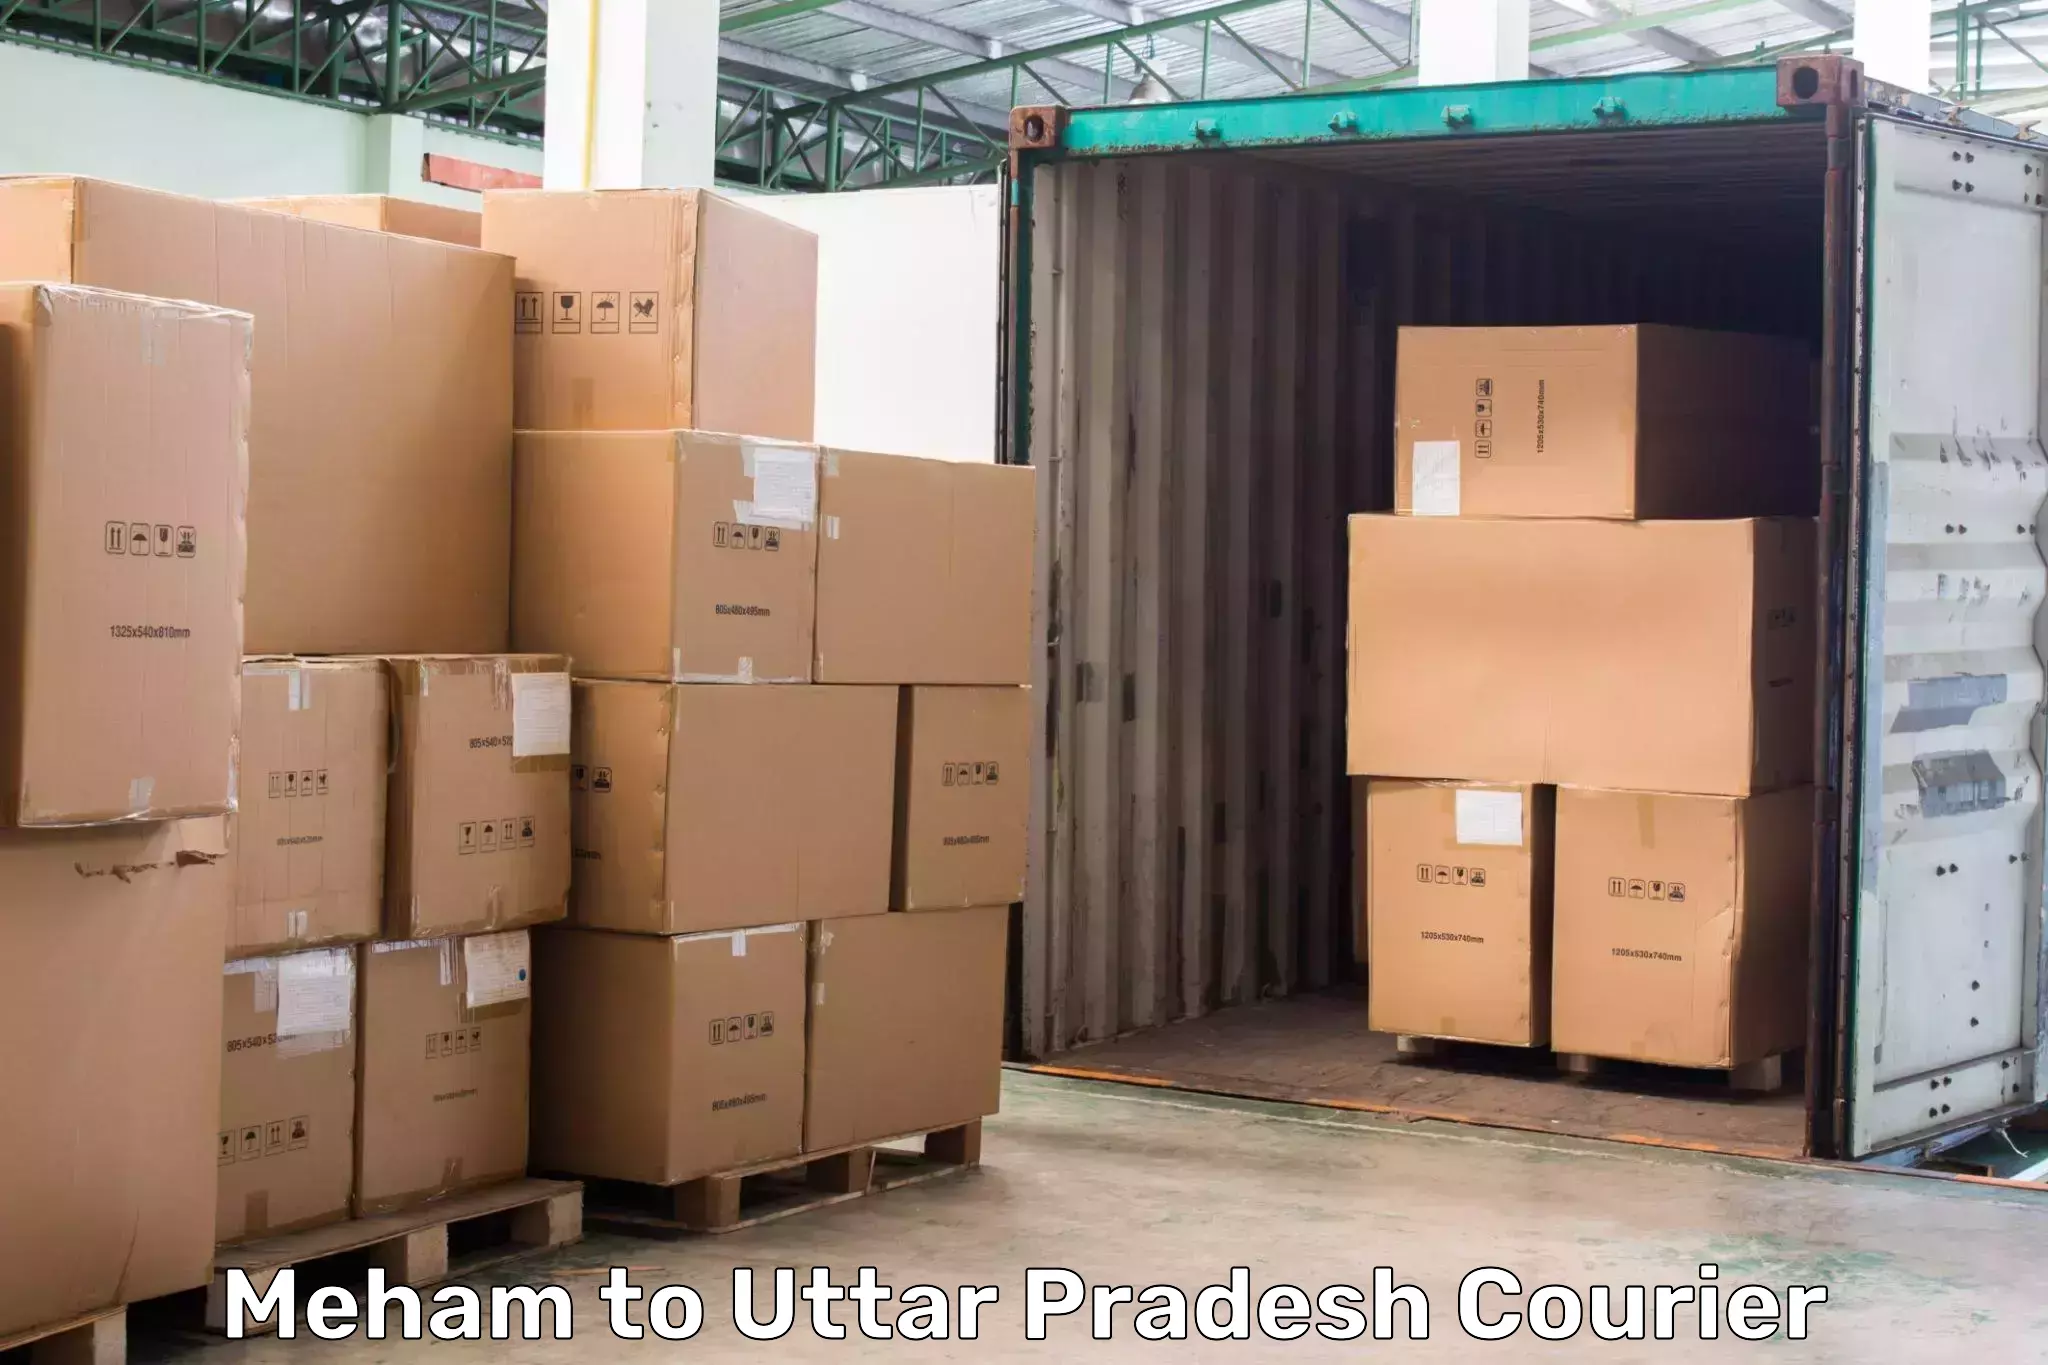 Courier service comparison Meham to Saharanpur